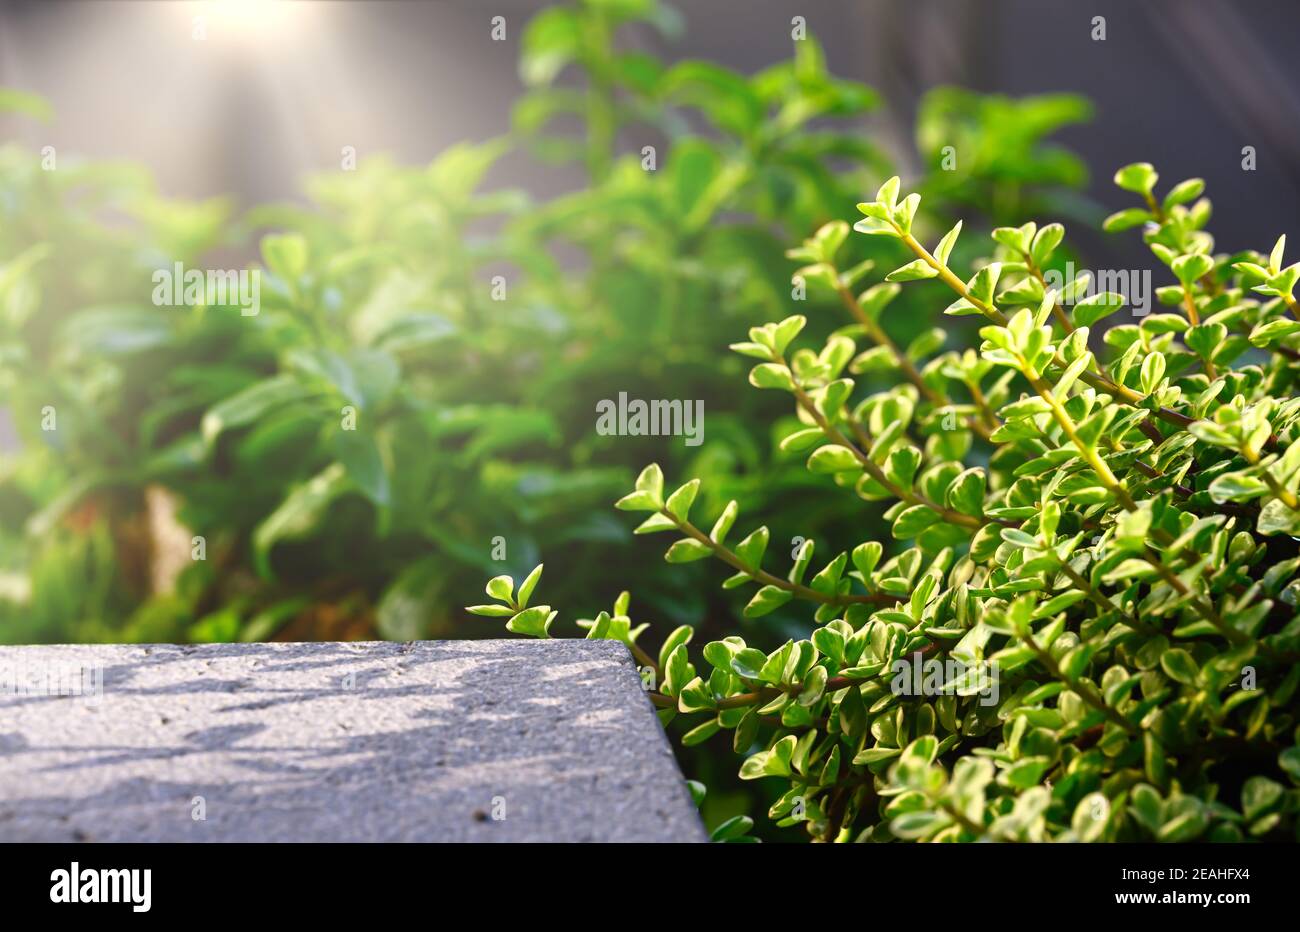 Elefantenbusch oder Afrikanischer Purslane-Baum, Zwergjadepflanze, seitlich mit Granit gelegt und mit Sonneneinstrahlung von oben kommend, Grüntöne ar Stockfoto